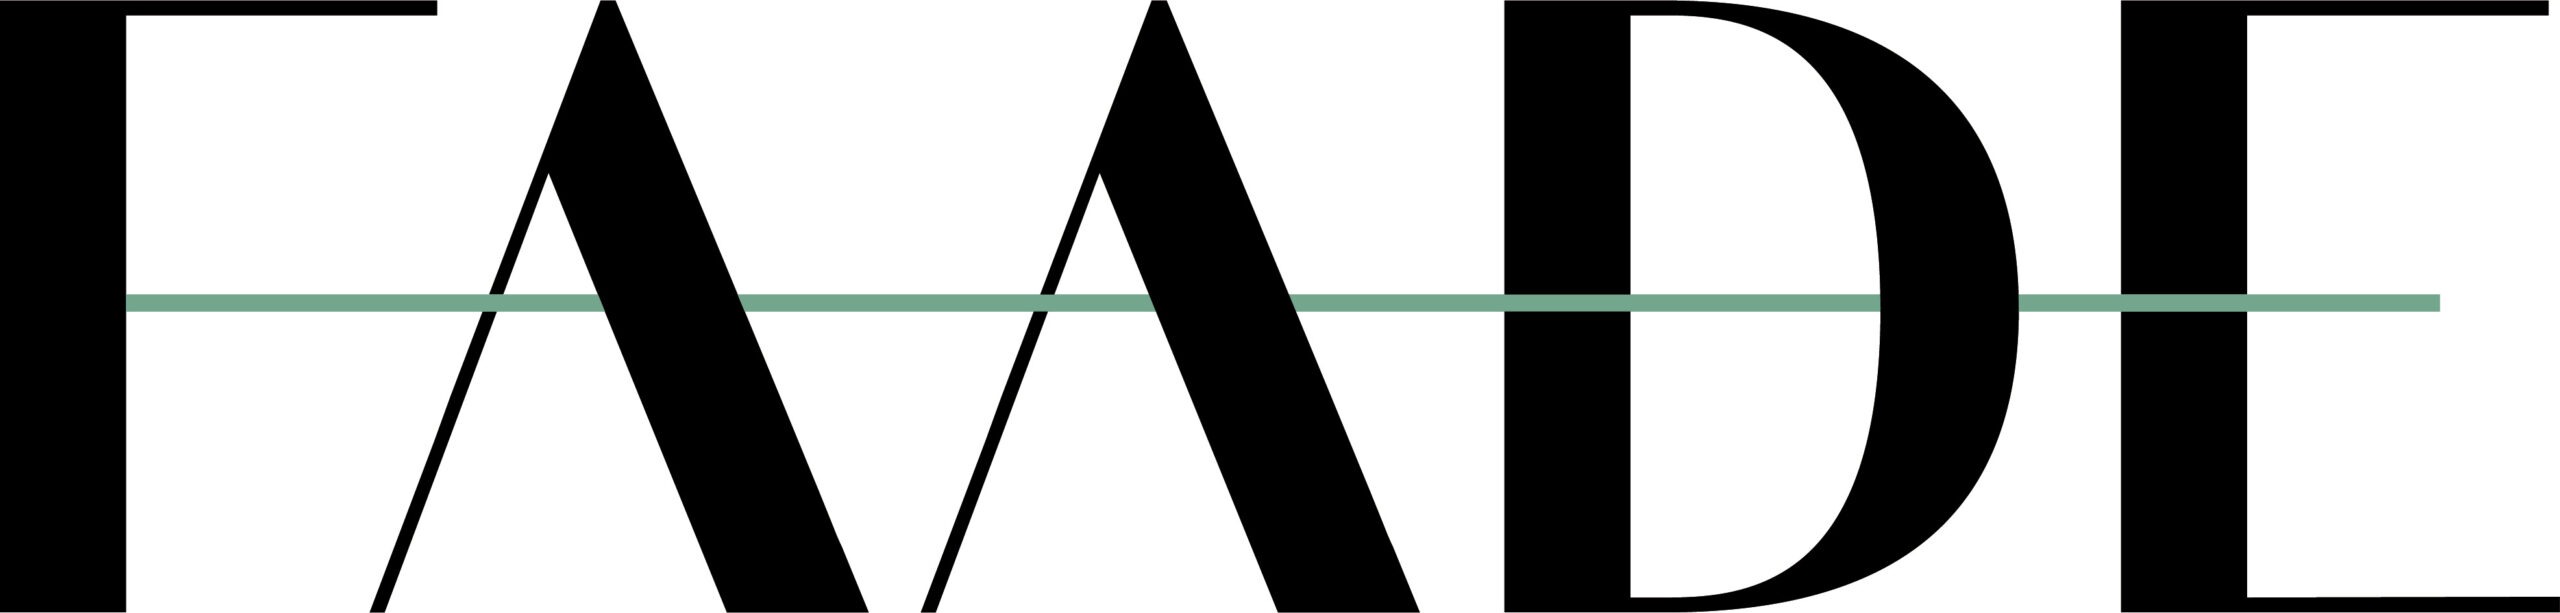 Faade-Logo2